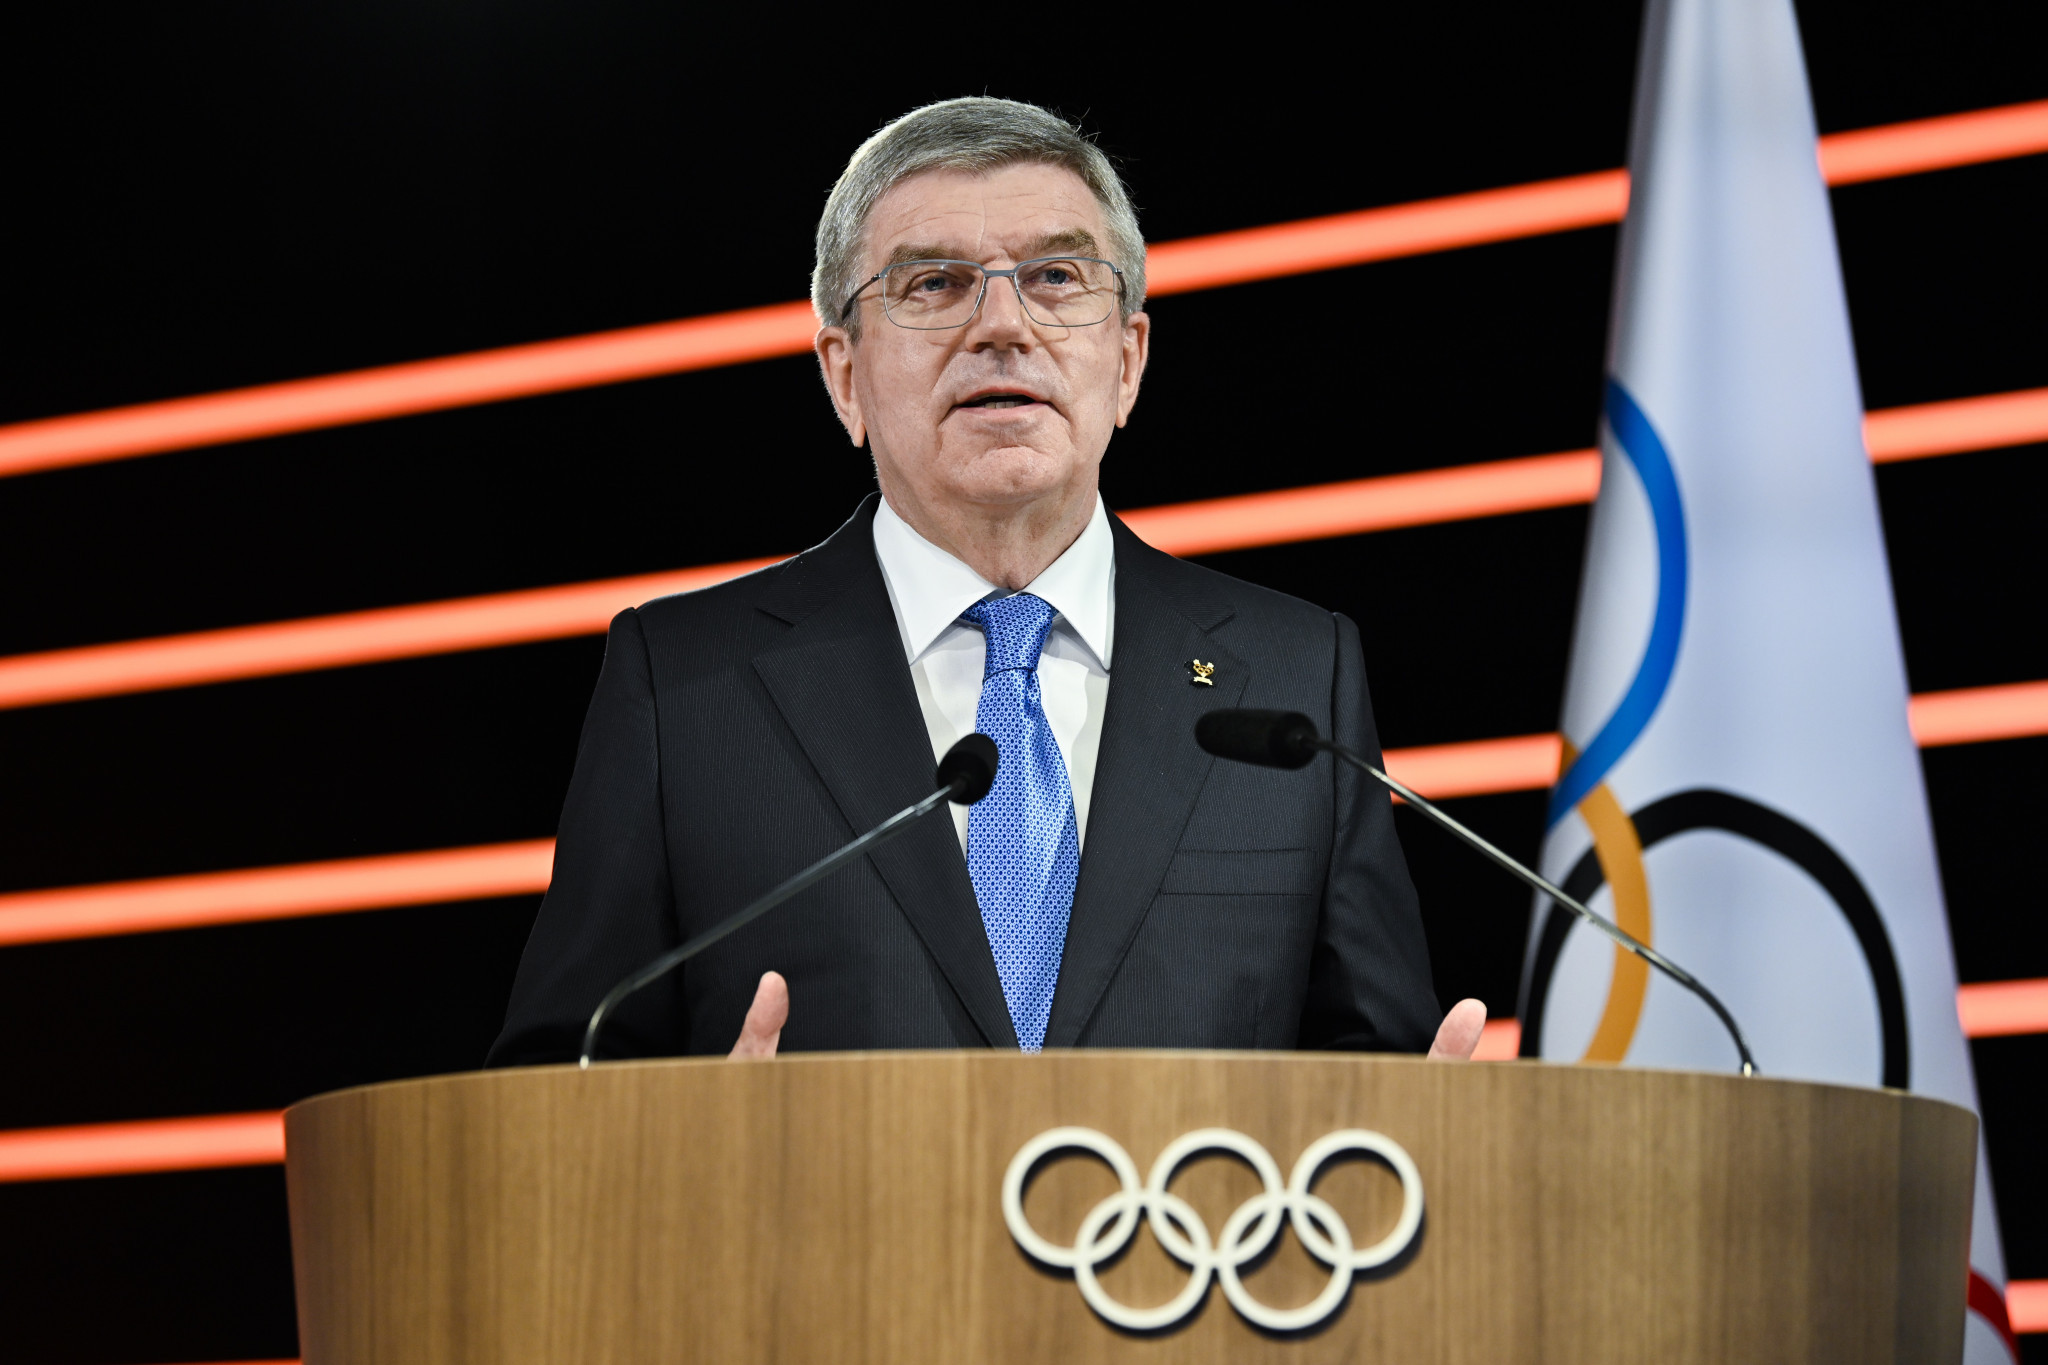 IOC President Thomas Bach has said 